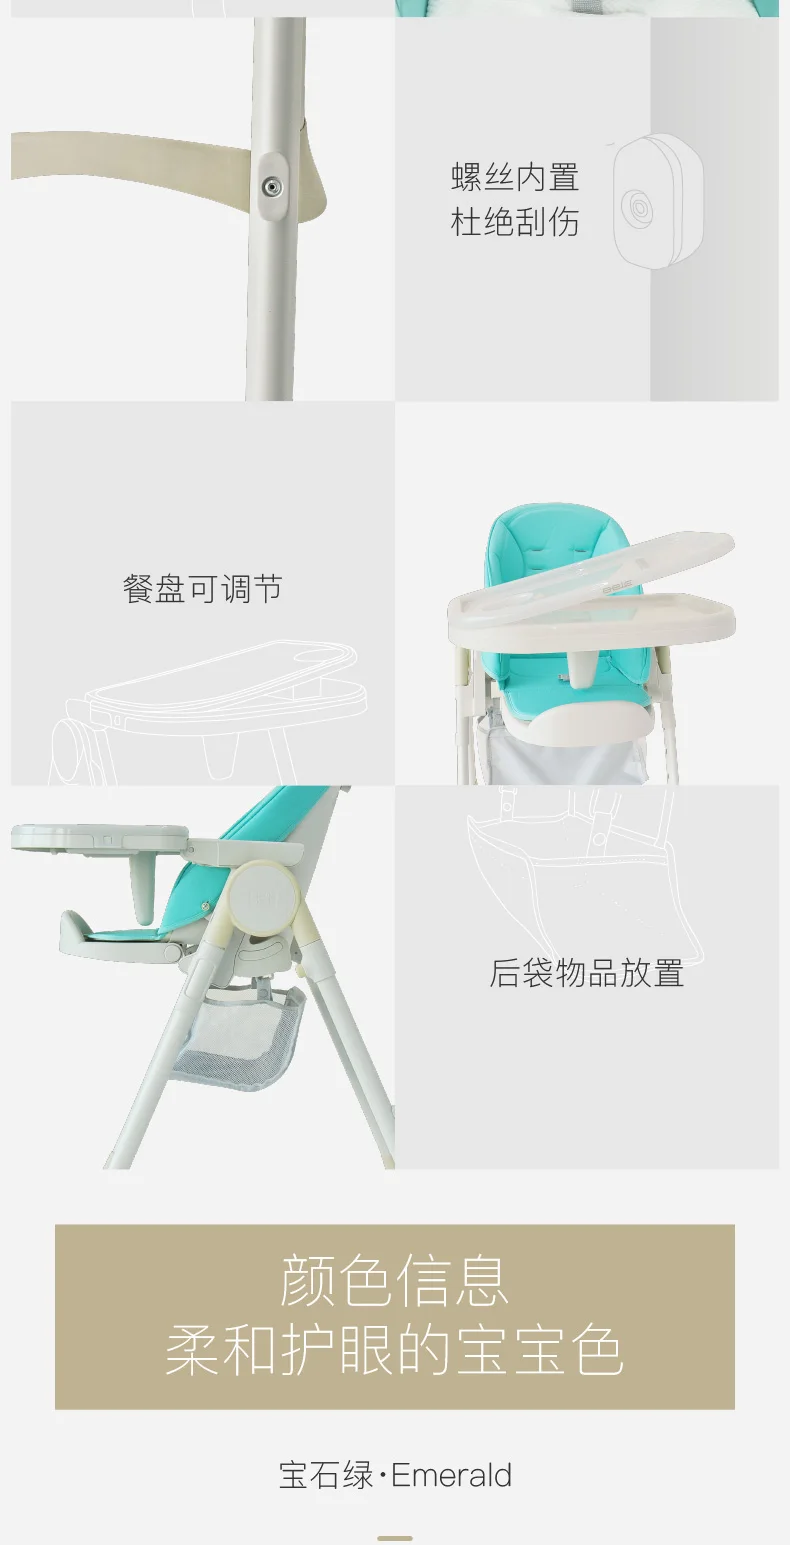 Принцесса порошок столик для кормления малыша высокий стул складной портативный многофункциональный детский стульчик яйцо образный обеденный стул сиденье